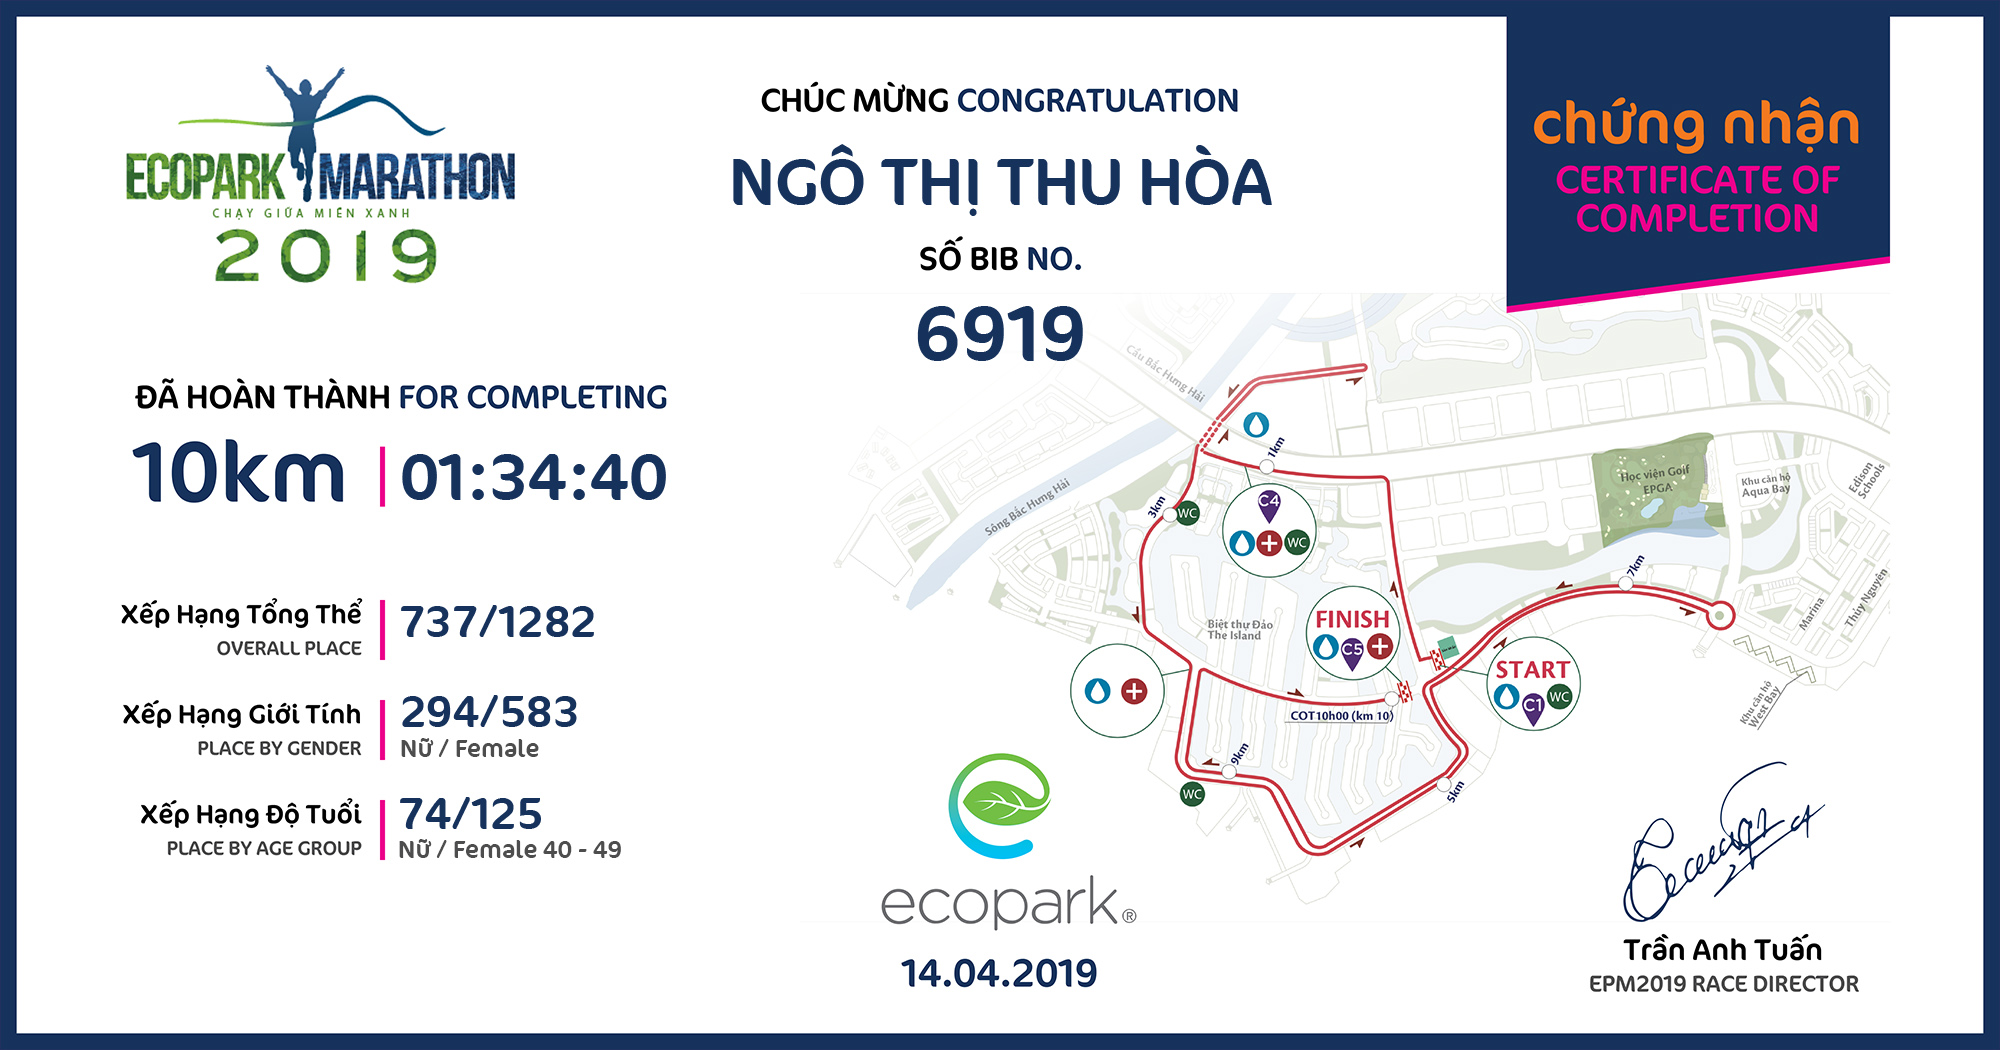 6919 - Ngô Thị Thu Hòa